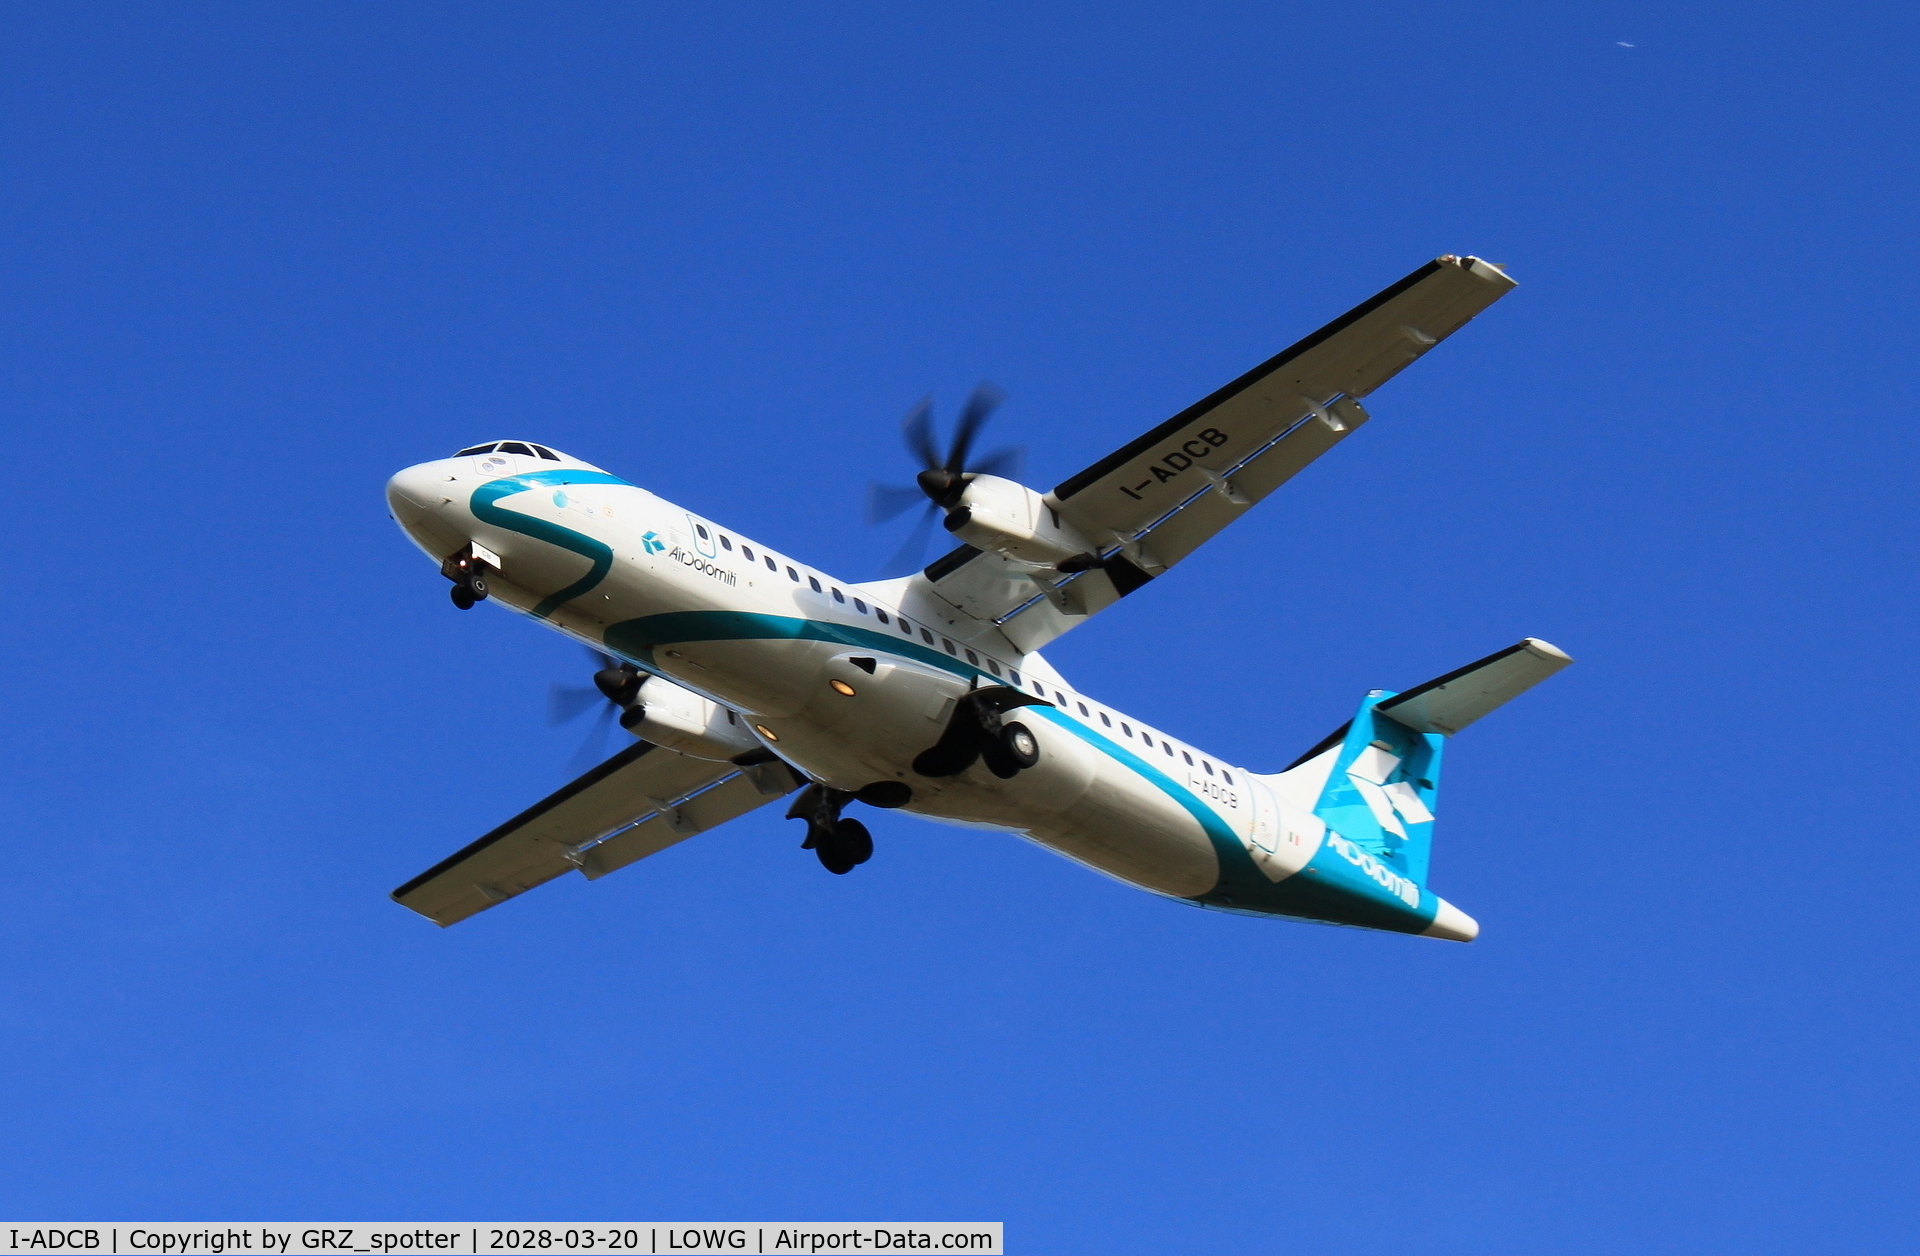 I-ADCB, 2001 ATR 72-500 C/N 660, Air dolomiti Atr 72